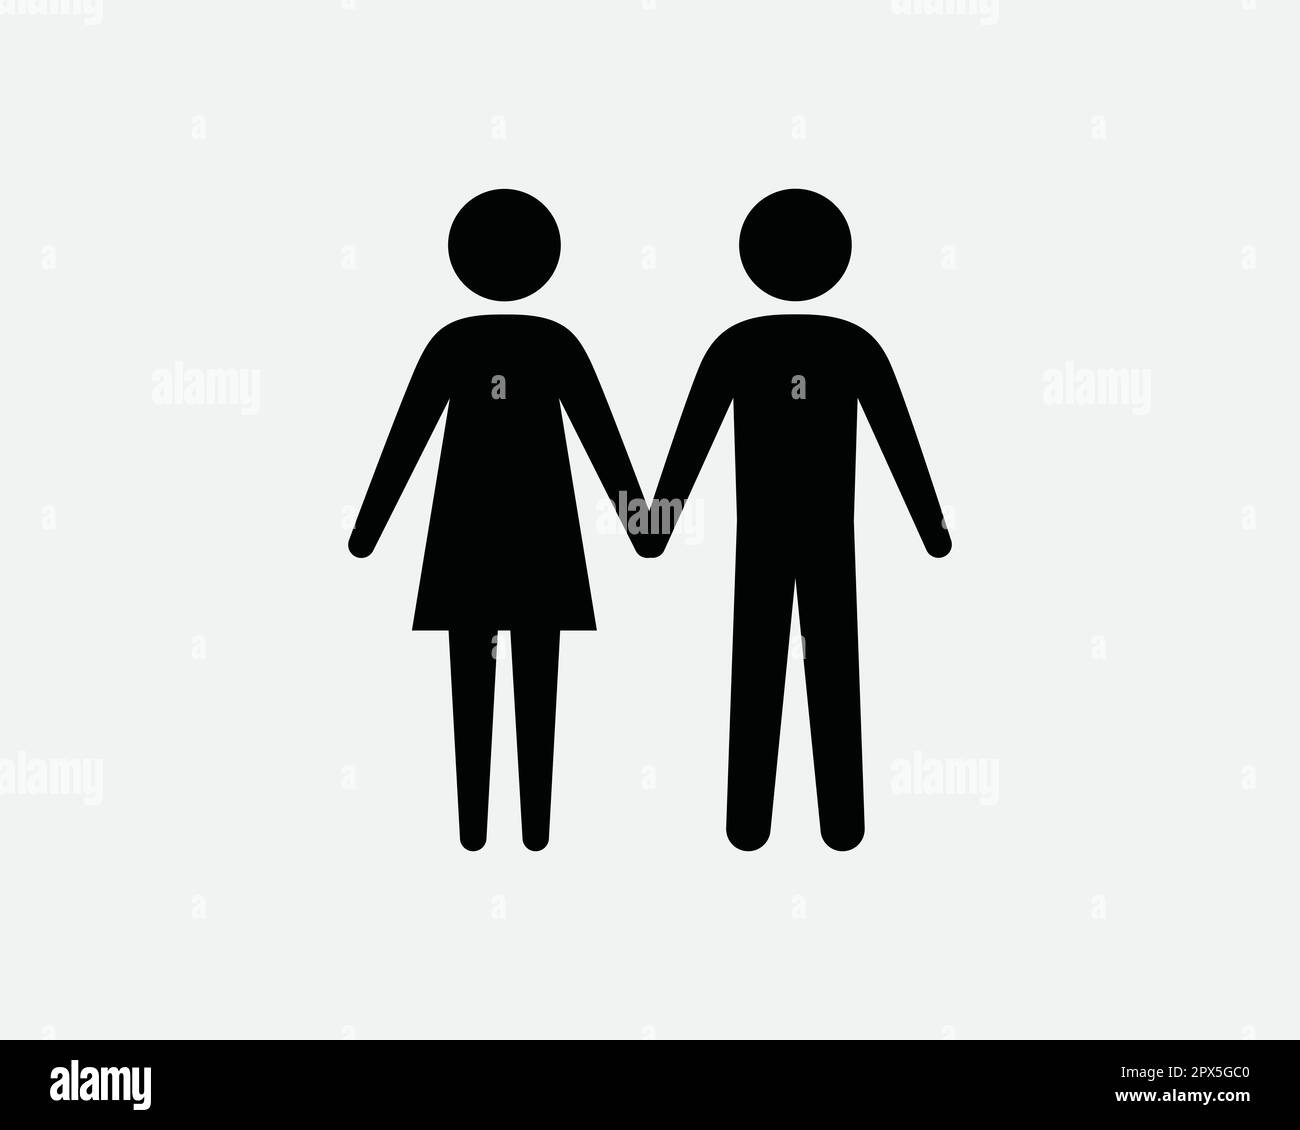 Männliche Strichmännchen Halten Hände Dating Beziehung Ehemann Ehefrau in Love Schwarz-Weiß Symbol Symbol Symbol Vektor Kunstwerk Clipart Illustration Stock Vektor